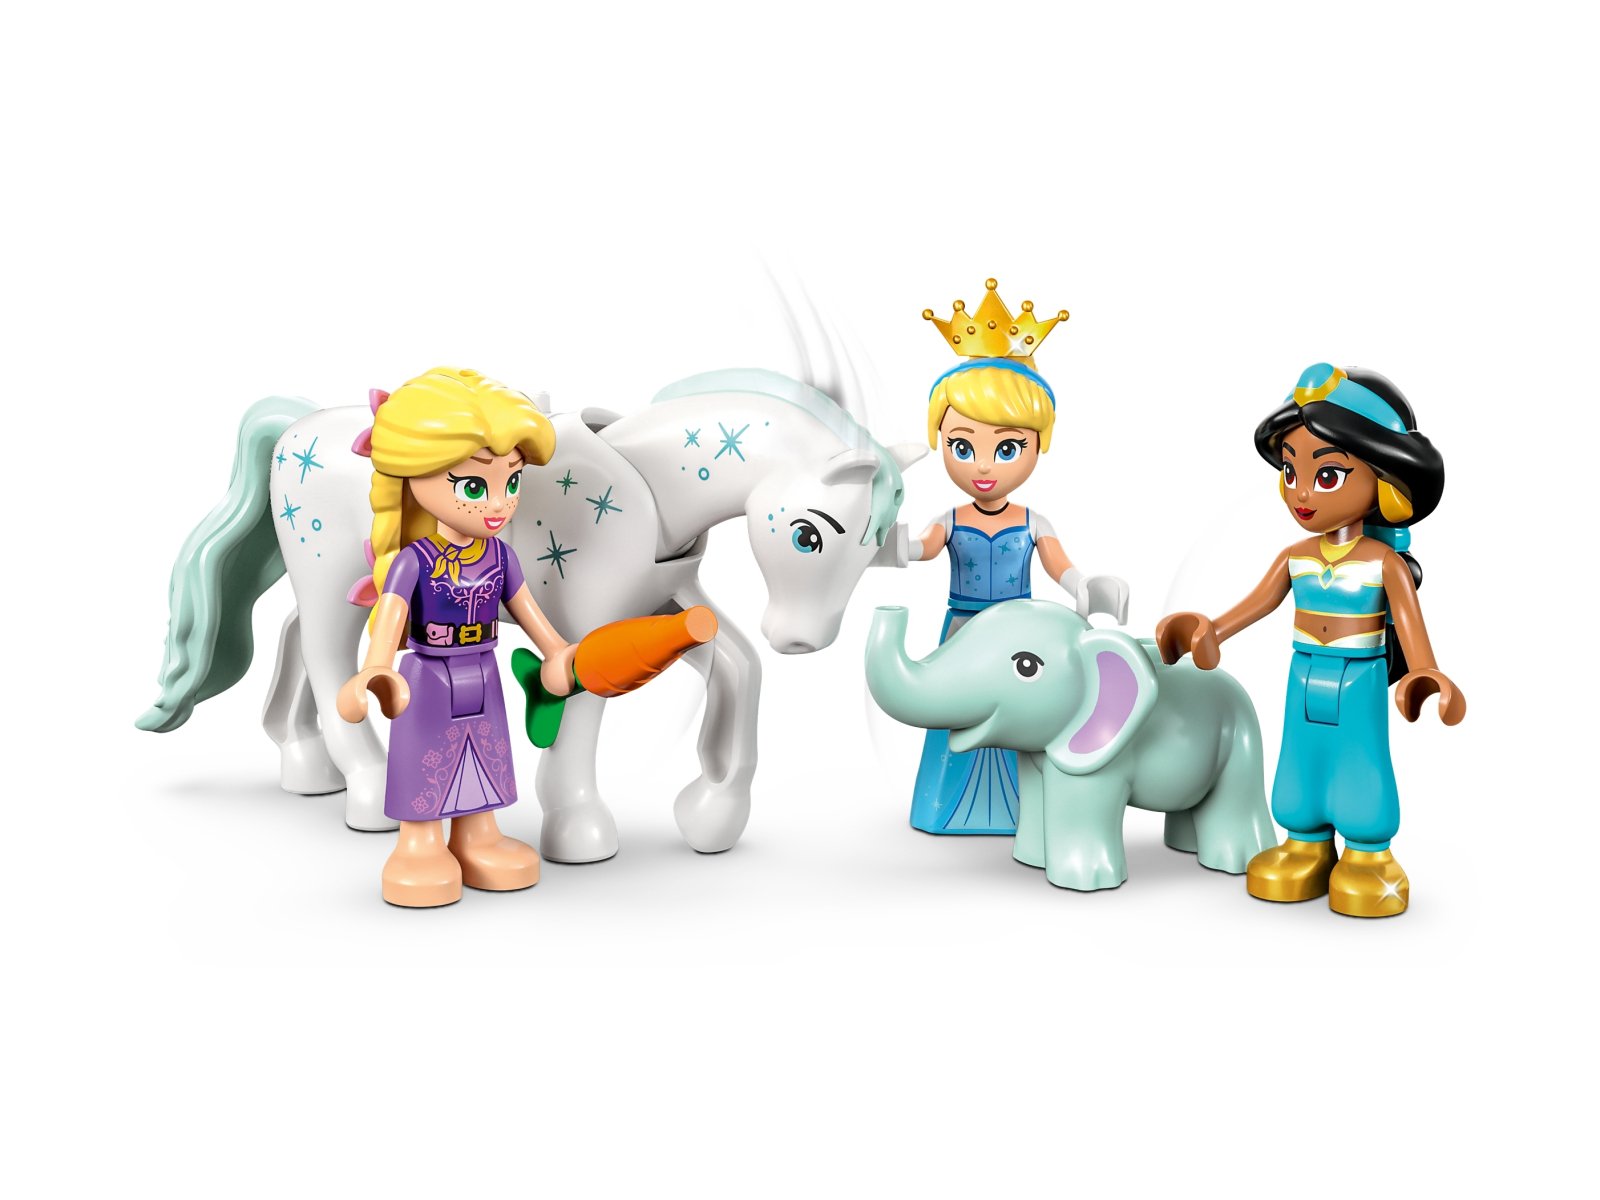 LEGO Disney Podróż zaczarowanej księżniczki 43216